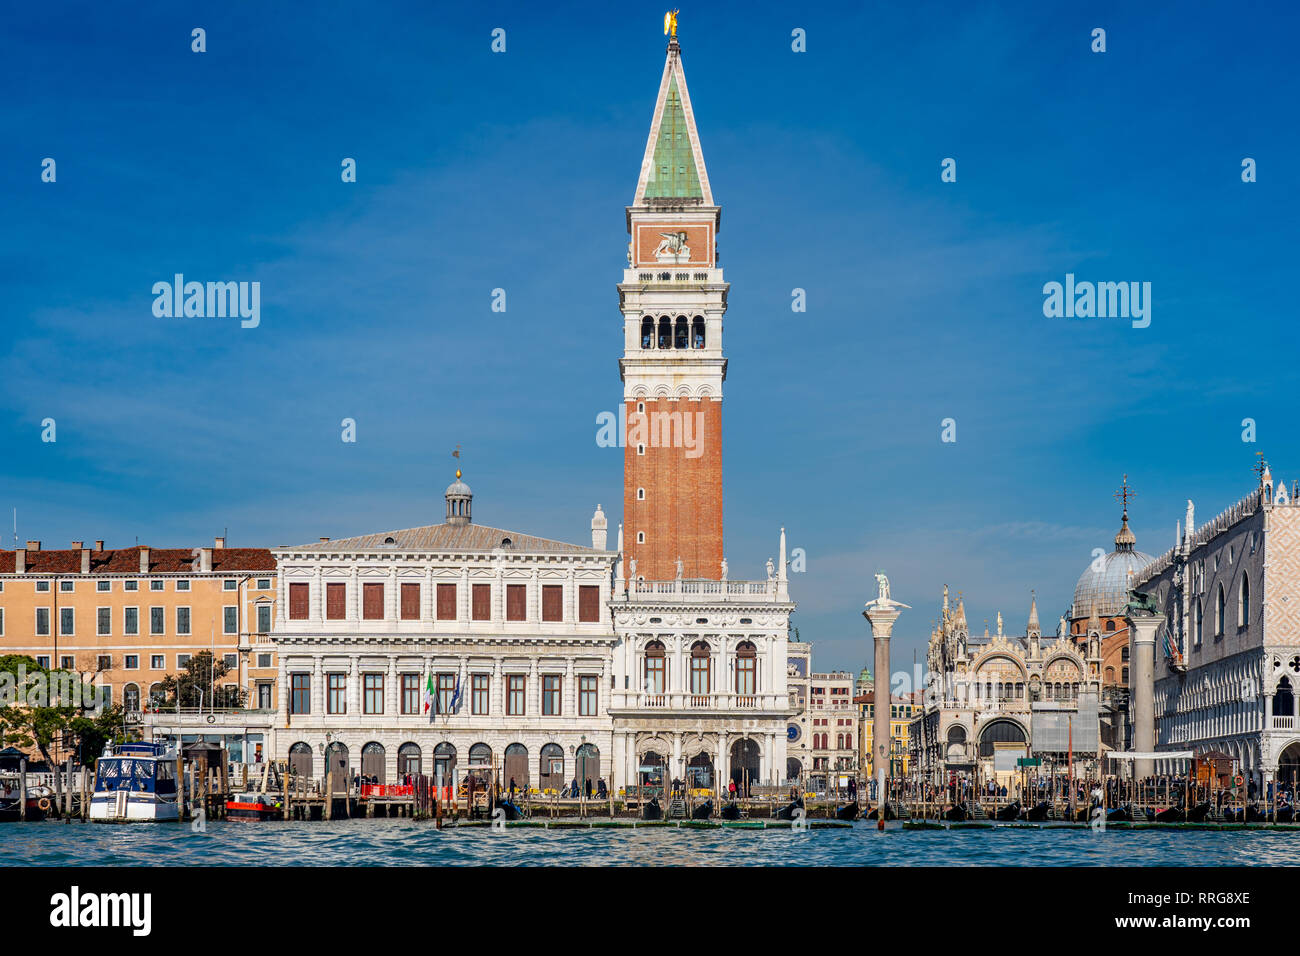 Blick auf St Mark's Campanile und Dogenpalast in Venedig. Aus einer Reihe von Fotos in Italien. Foto Datum: Montag, 11. Februar 2019. Foto: R Stockfoto